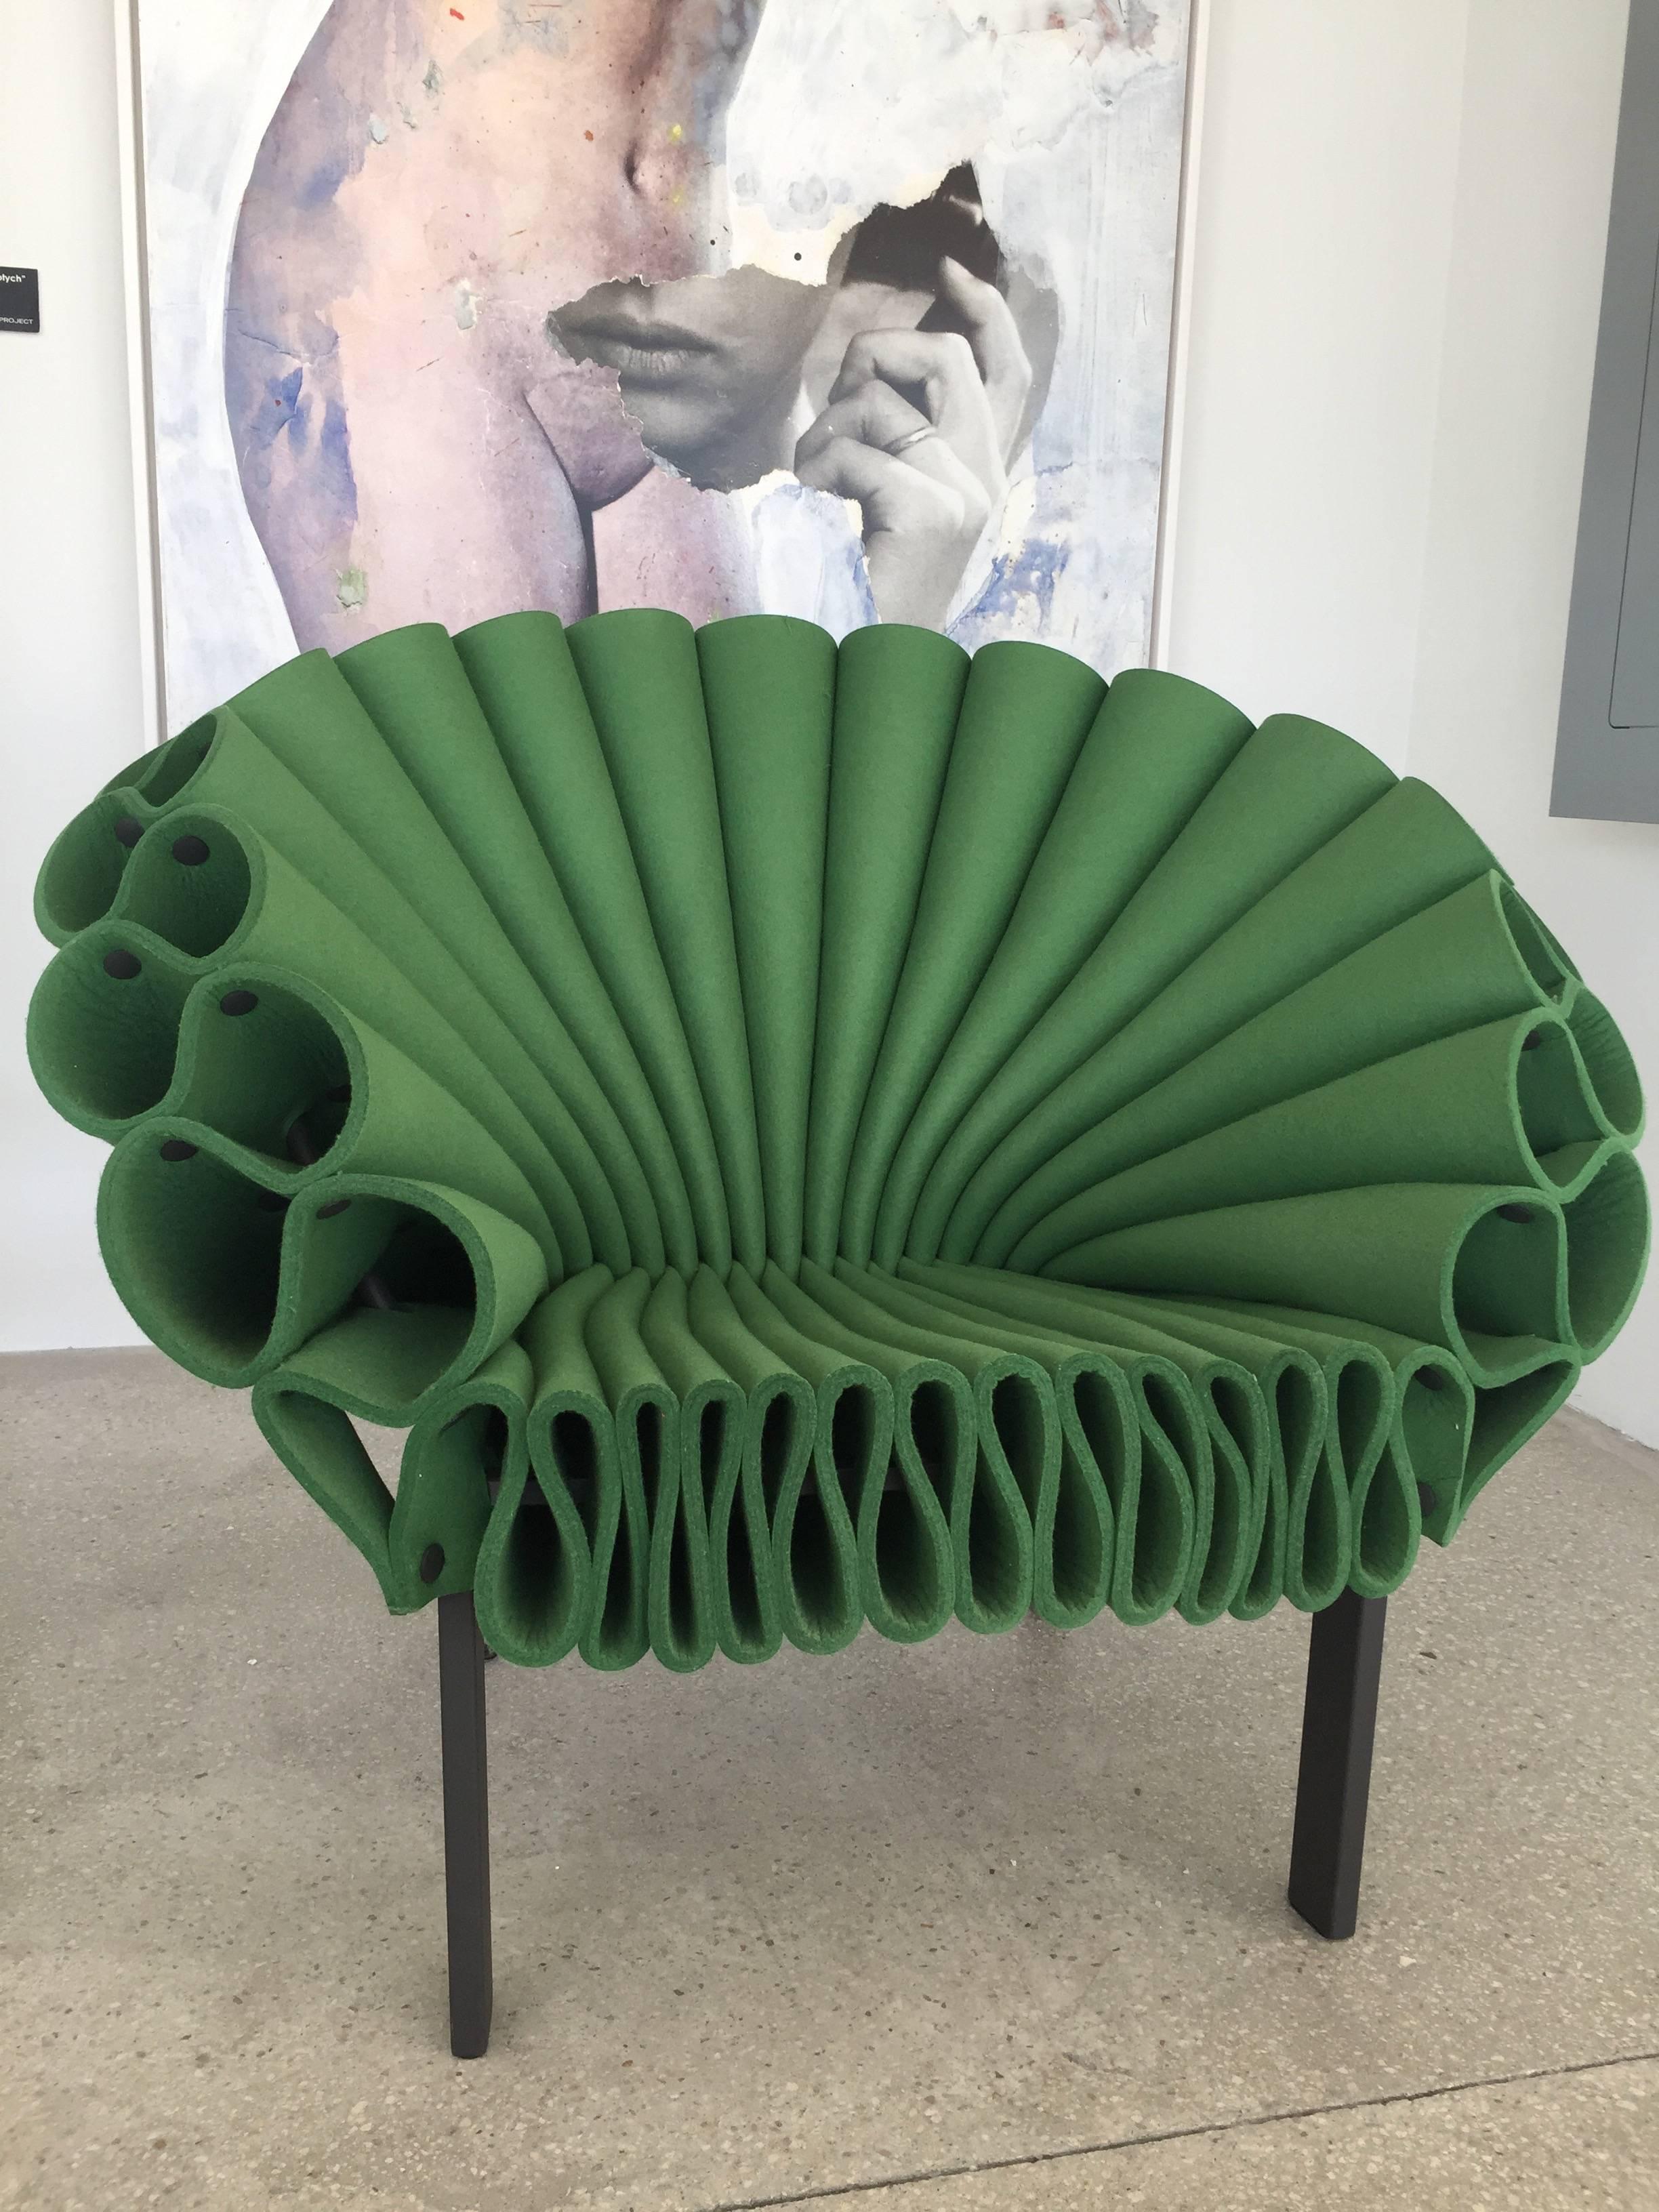 Modern Peacock Chair Designed by Dror Benshetrit for Cappellini, Green